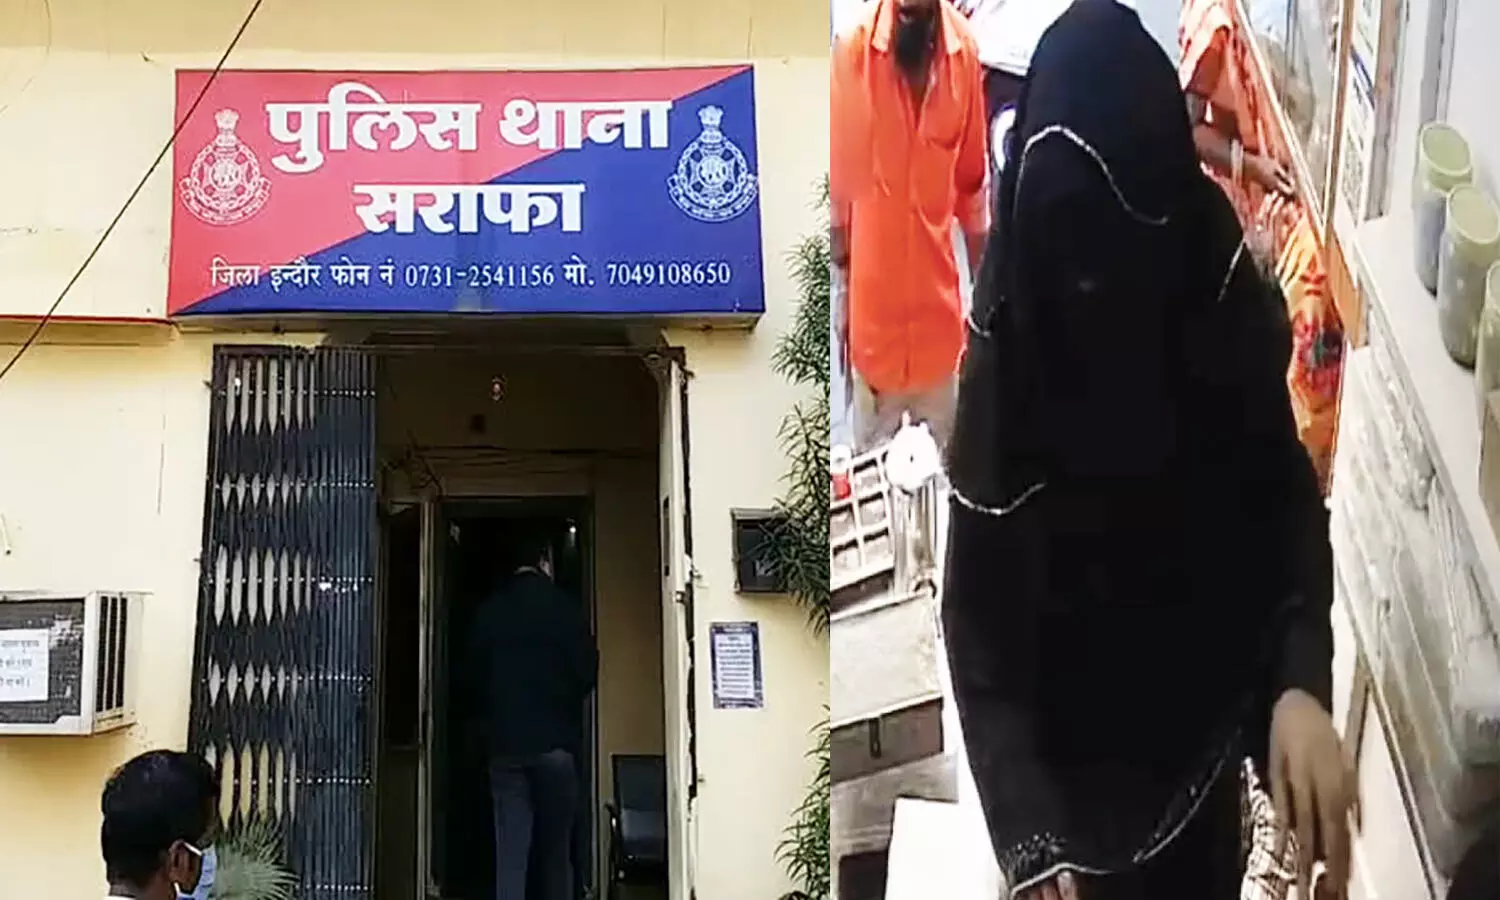 इंदौर में बुर्के वाली महिला ने चुराए 15 लाख के गहने, दूसरी दुकान में बेचने निकली तो पकड़ी गई